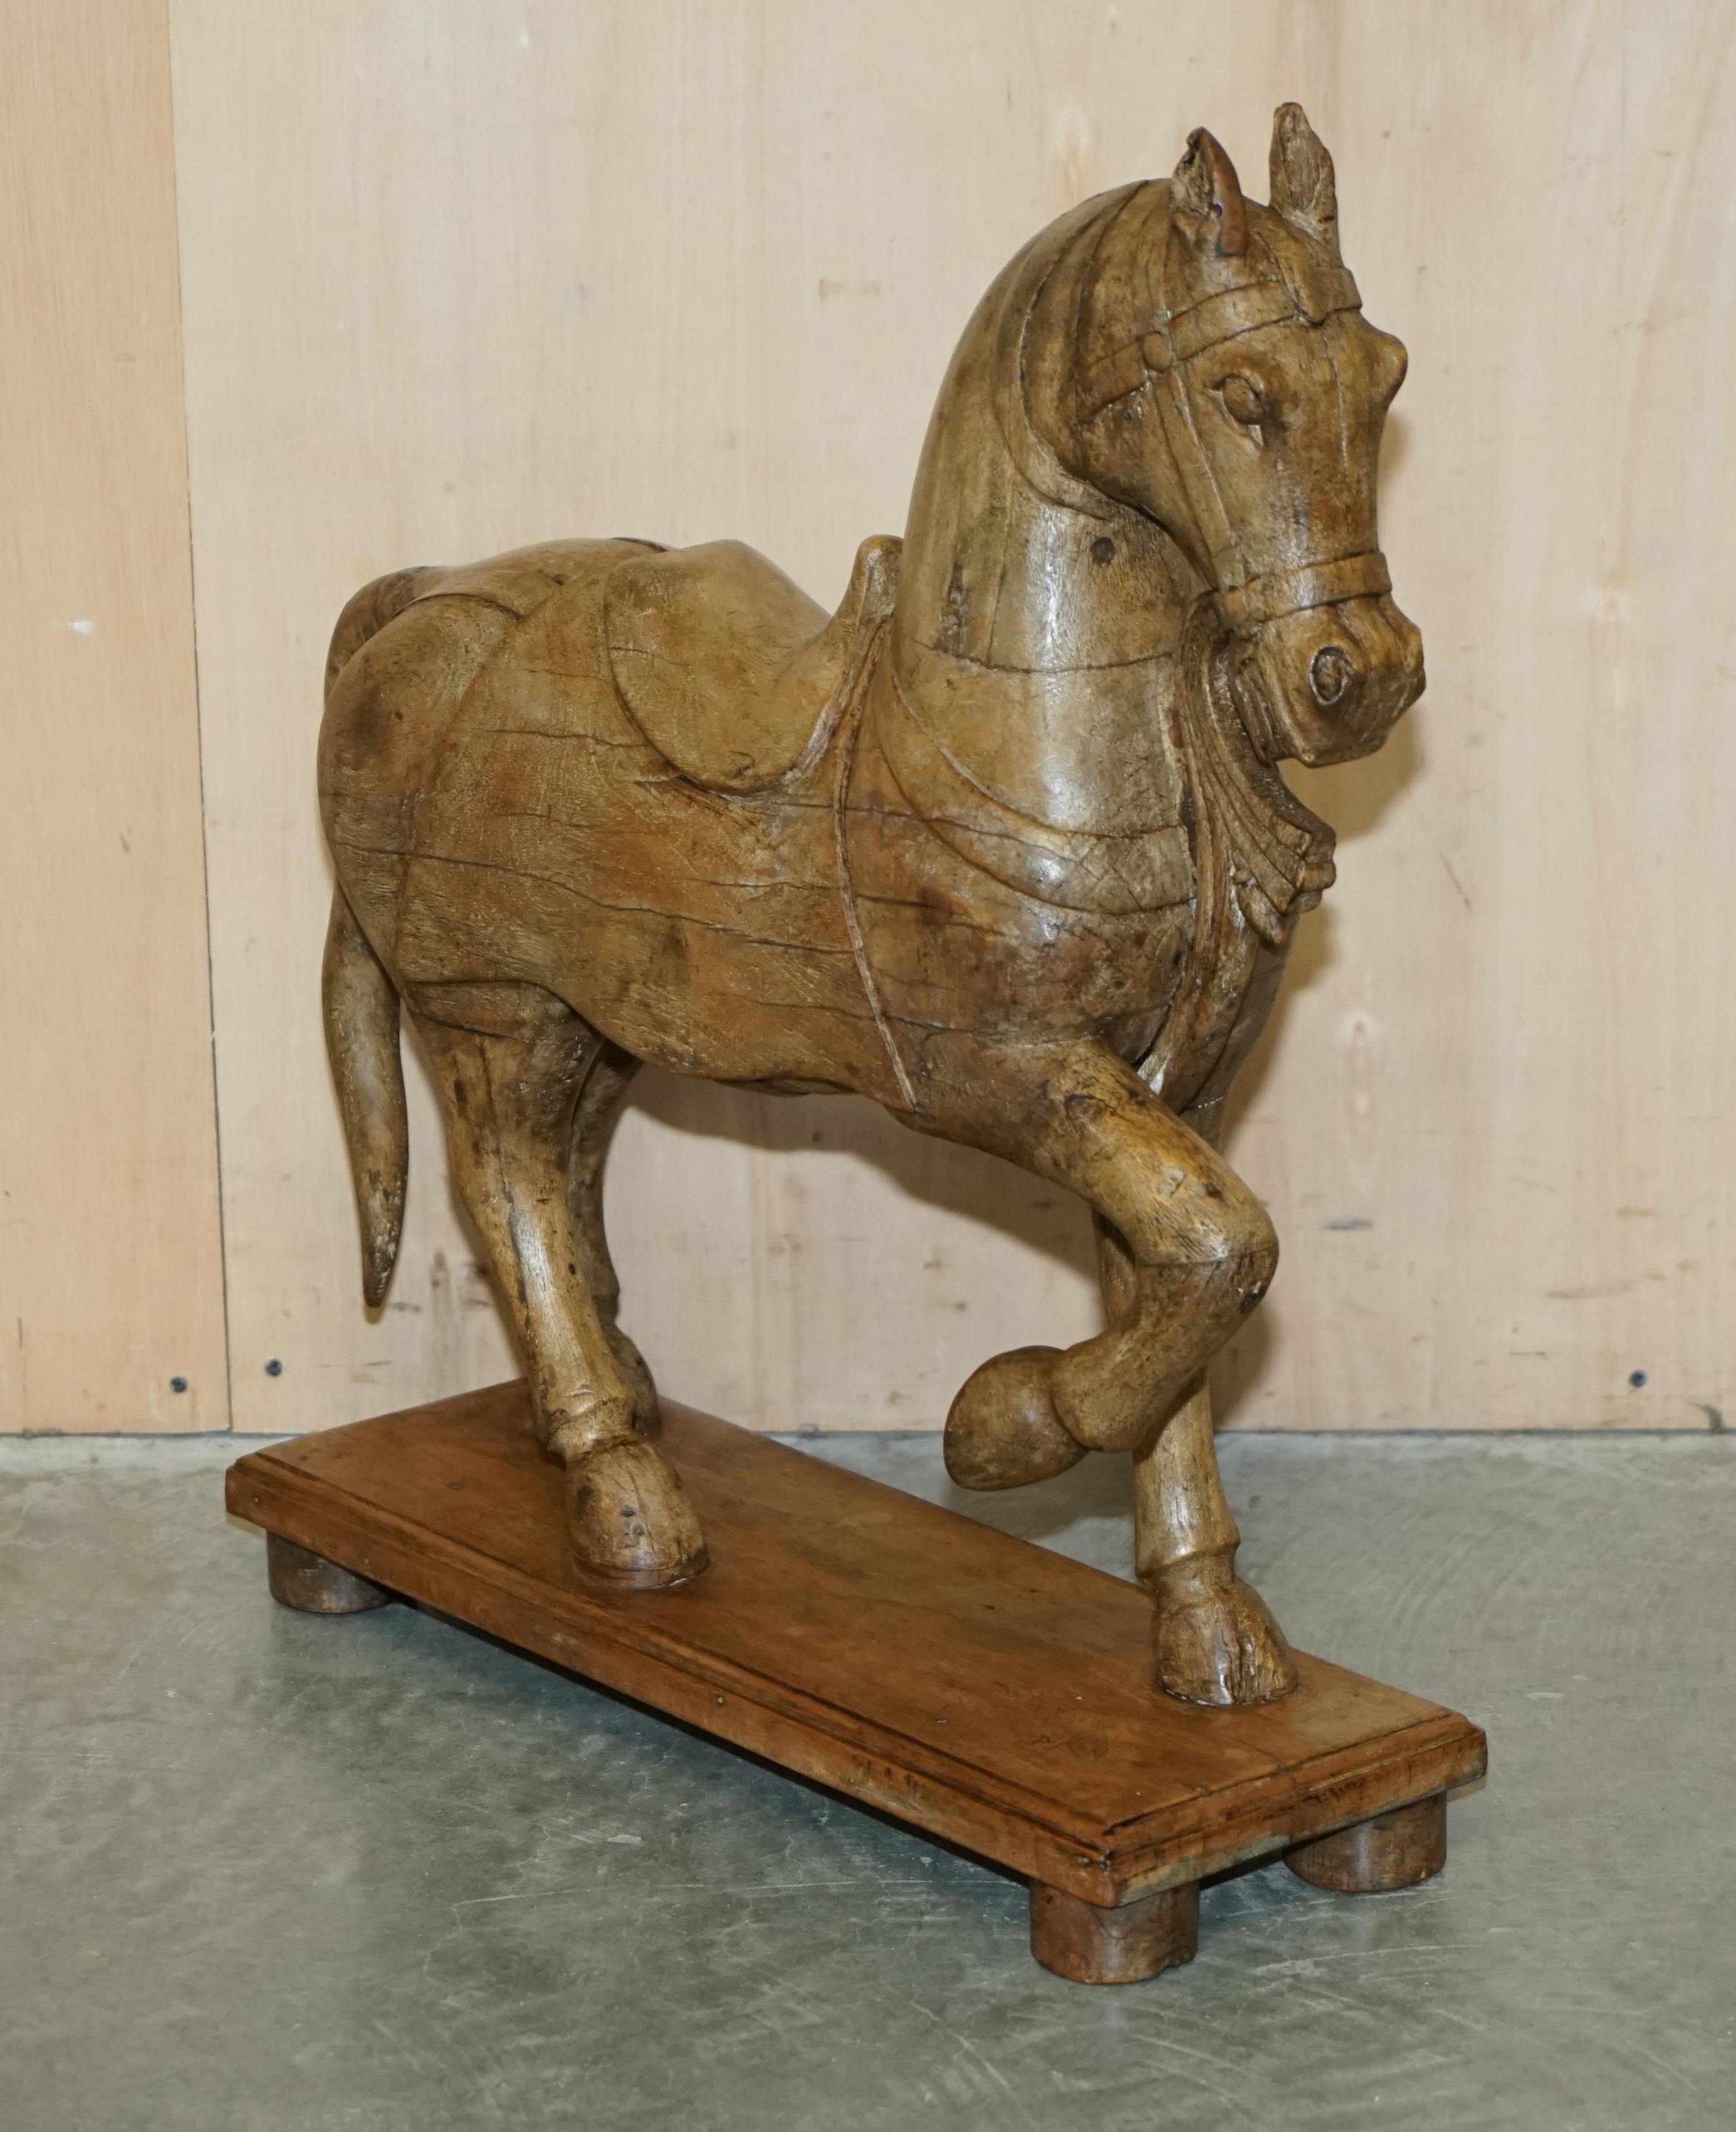 Royal House Antiques

The House Antiques a le plaisir de proposer à la vente cette paire très décorative de chevaux en bois sculptés à la main, datant d'environ 1880. 

Veuillez noter que les frais de livraison indiqués sont donnés à titre